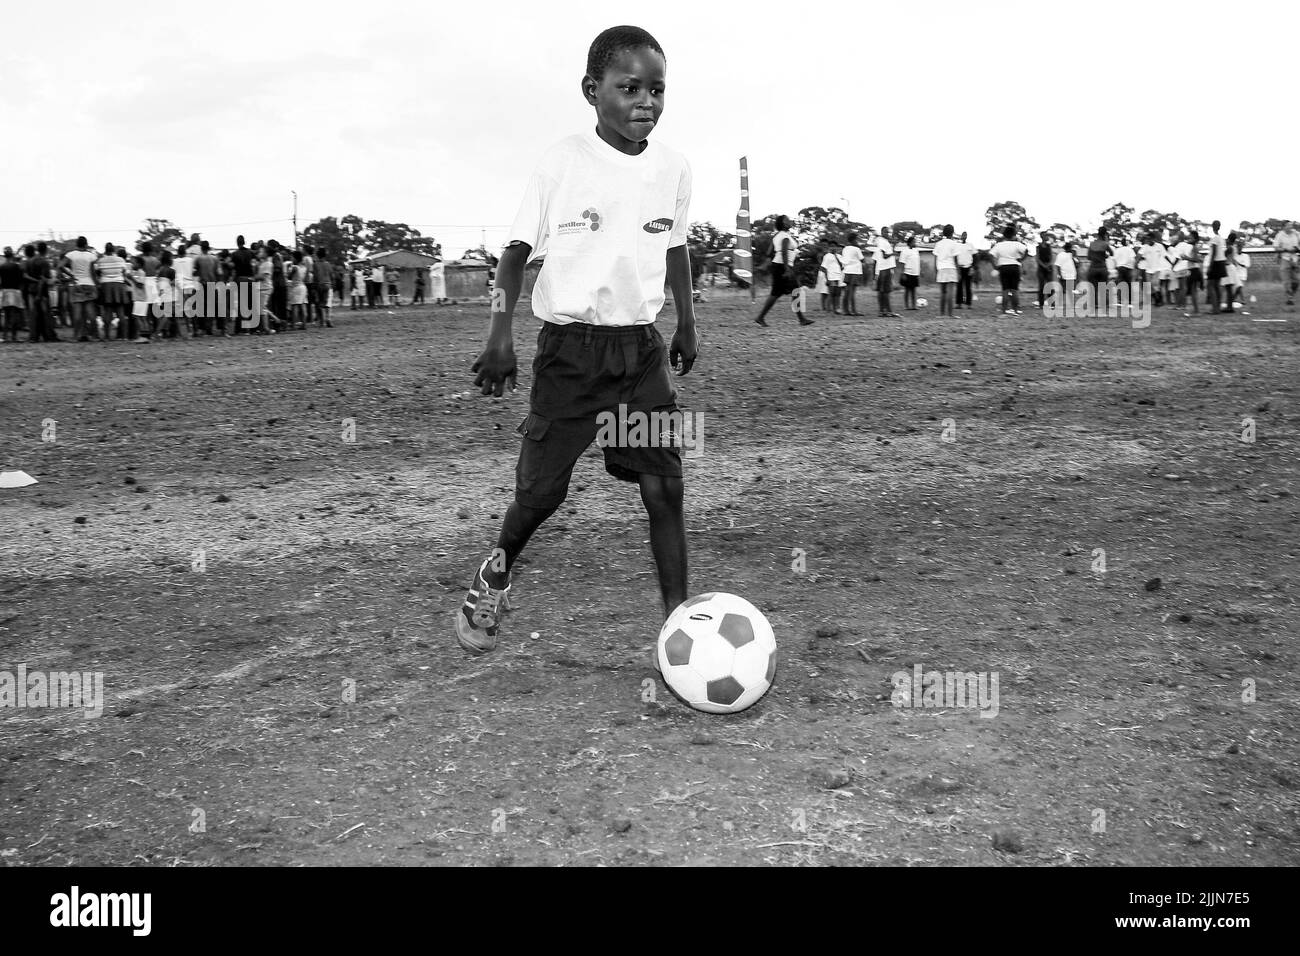 Une échelle de gris d'un enfant africain qui fait des activités liées au football sur le terrain de jeu de l'école à Johannesburg, Afrique du Sud Banque D'Images